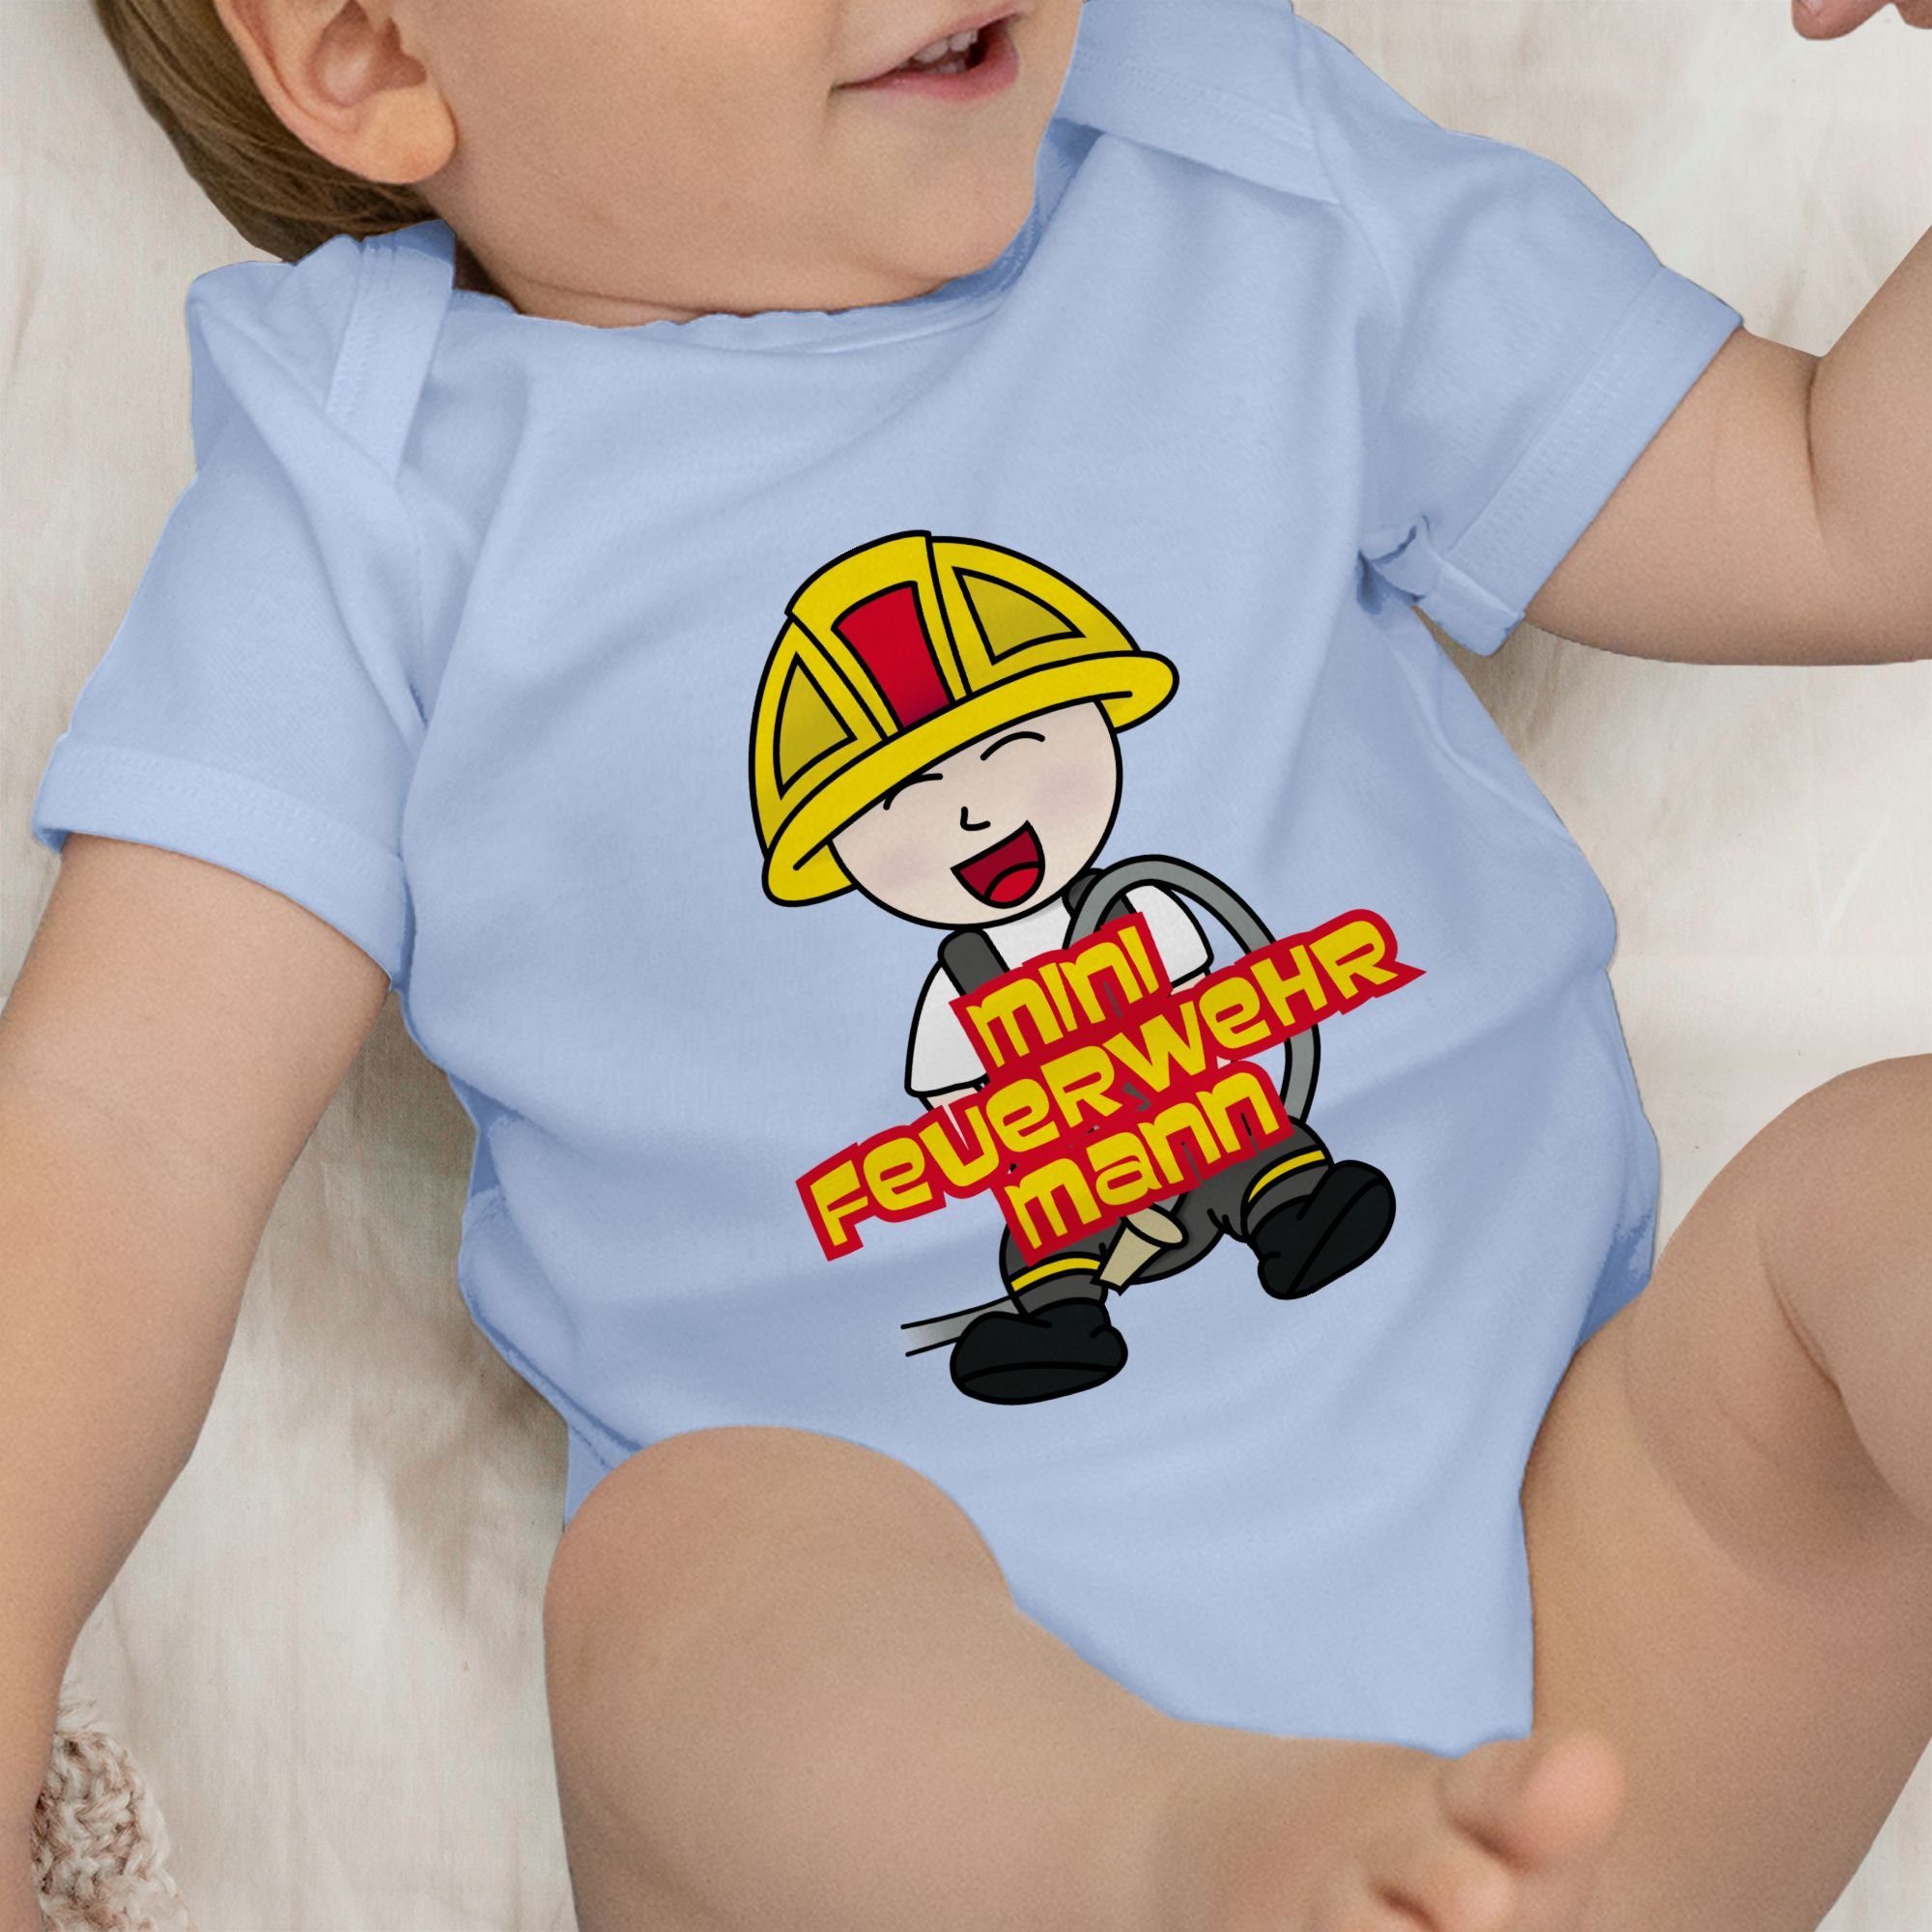 Shirtbody Feuerwehrmann Babyblau Mini 2 Shirtracer Feuerwehr